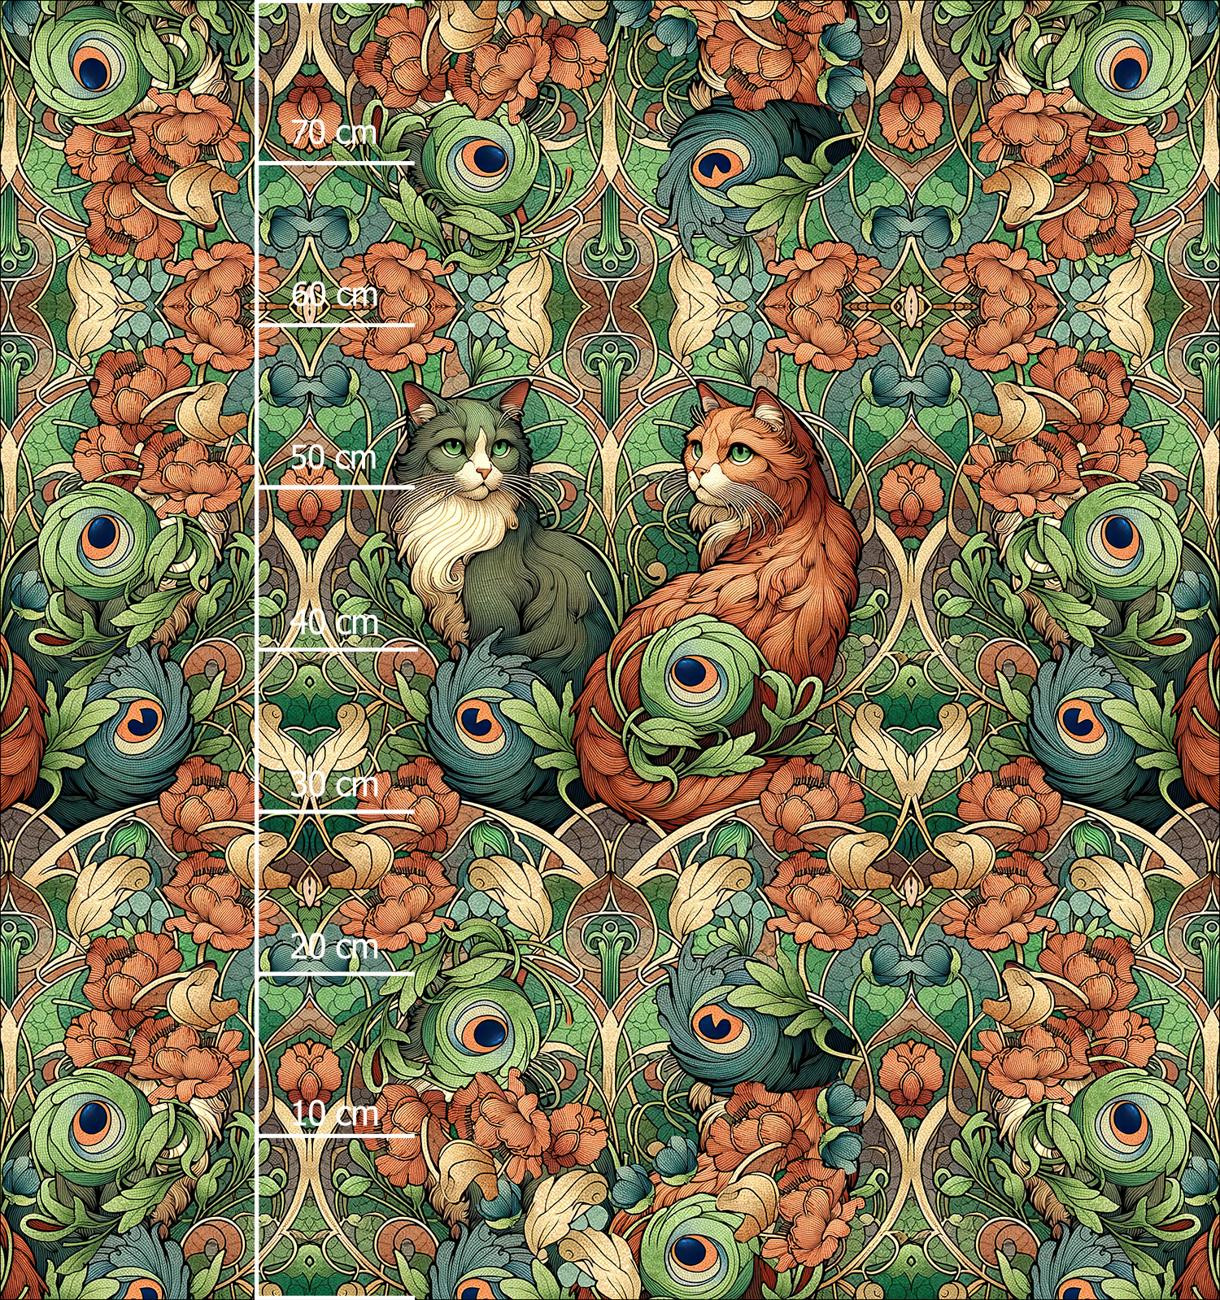 ART NOUVEAU CATS & FLOWERS PAT. 3 - panel (75cm x 80cm) looped knit